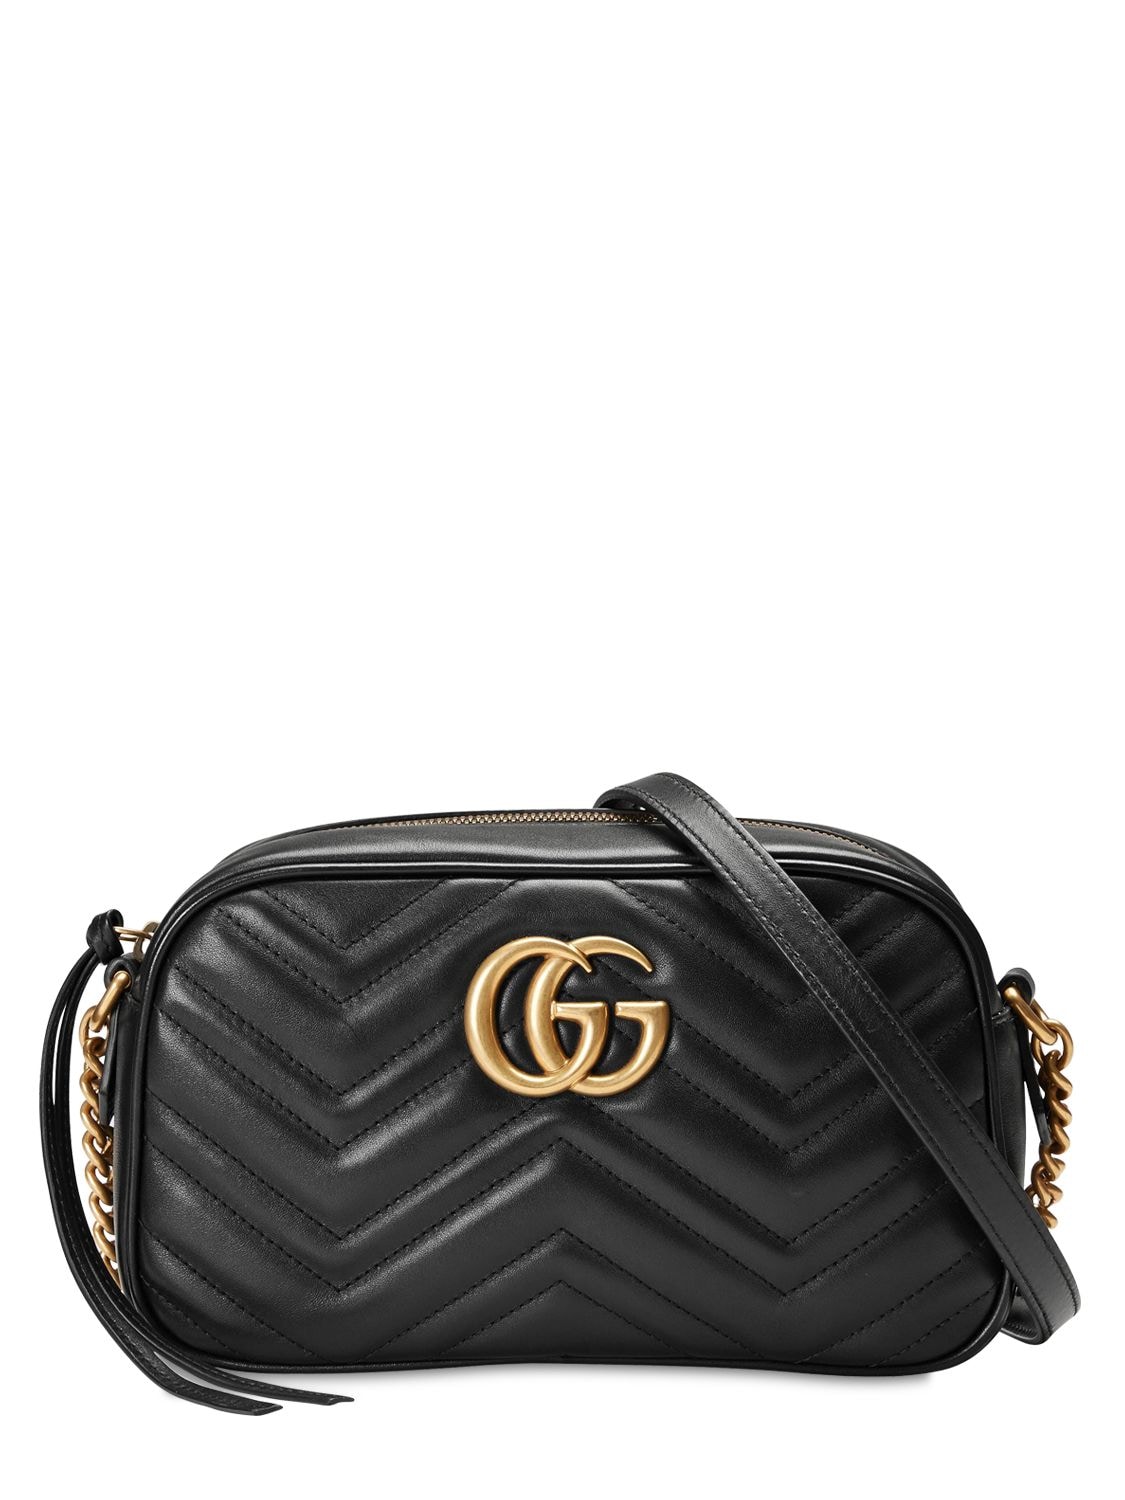 Mini gg marmont 2.0 leather camera bag - Gucci - Women